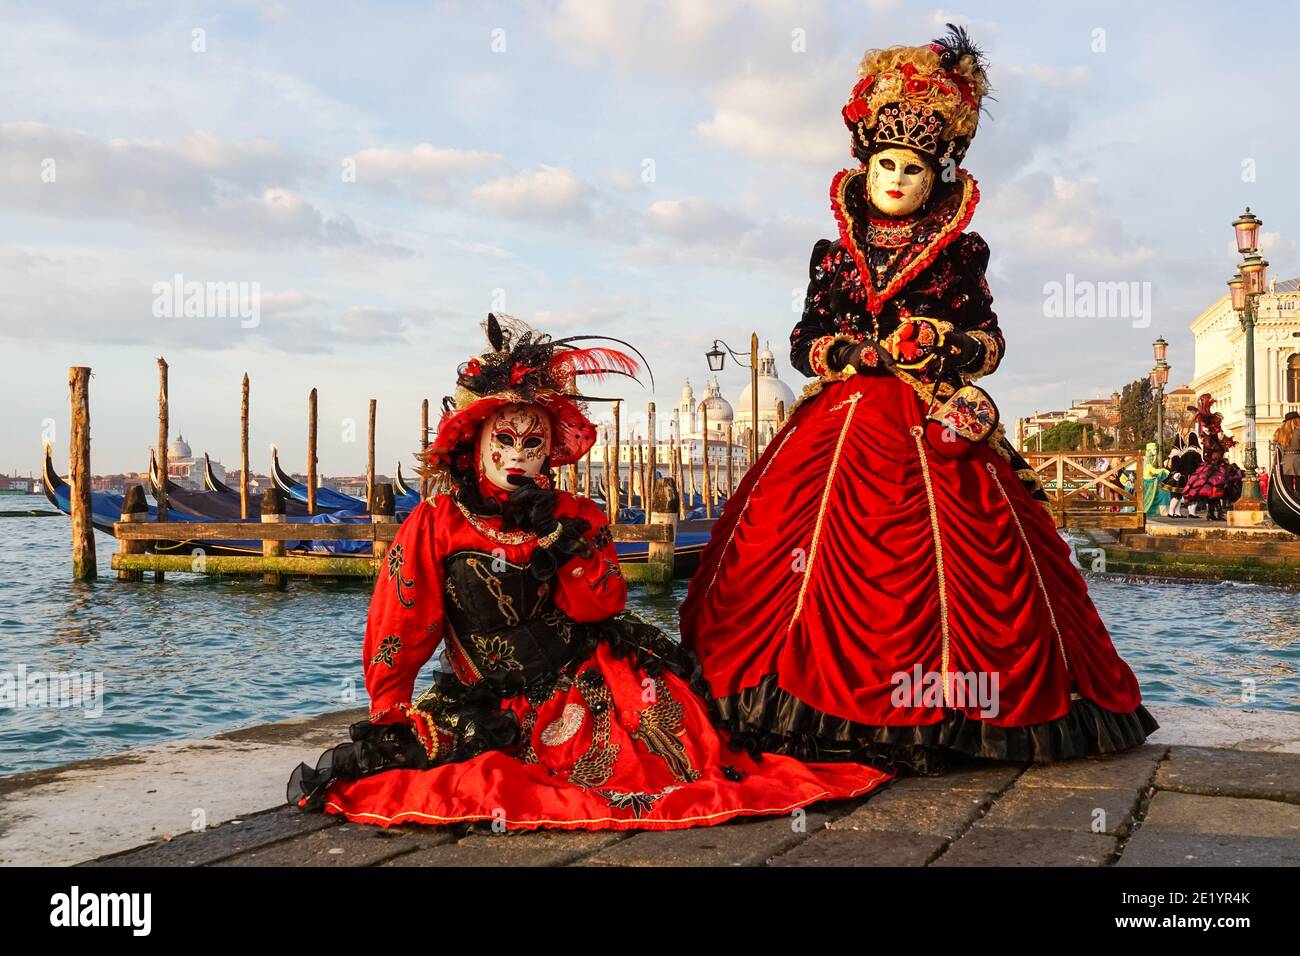 Zwei Frauen in traditionell dekorierten Kostümen und bemalten Masken während des Karnevals in Venedig, Italien Stockfoto